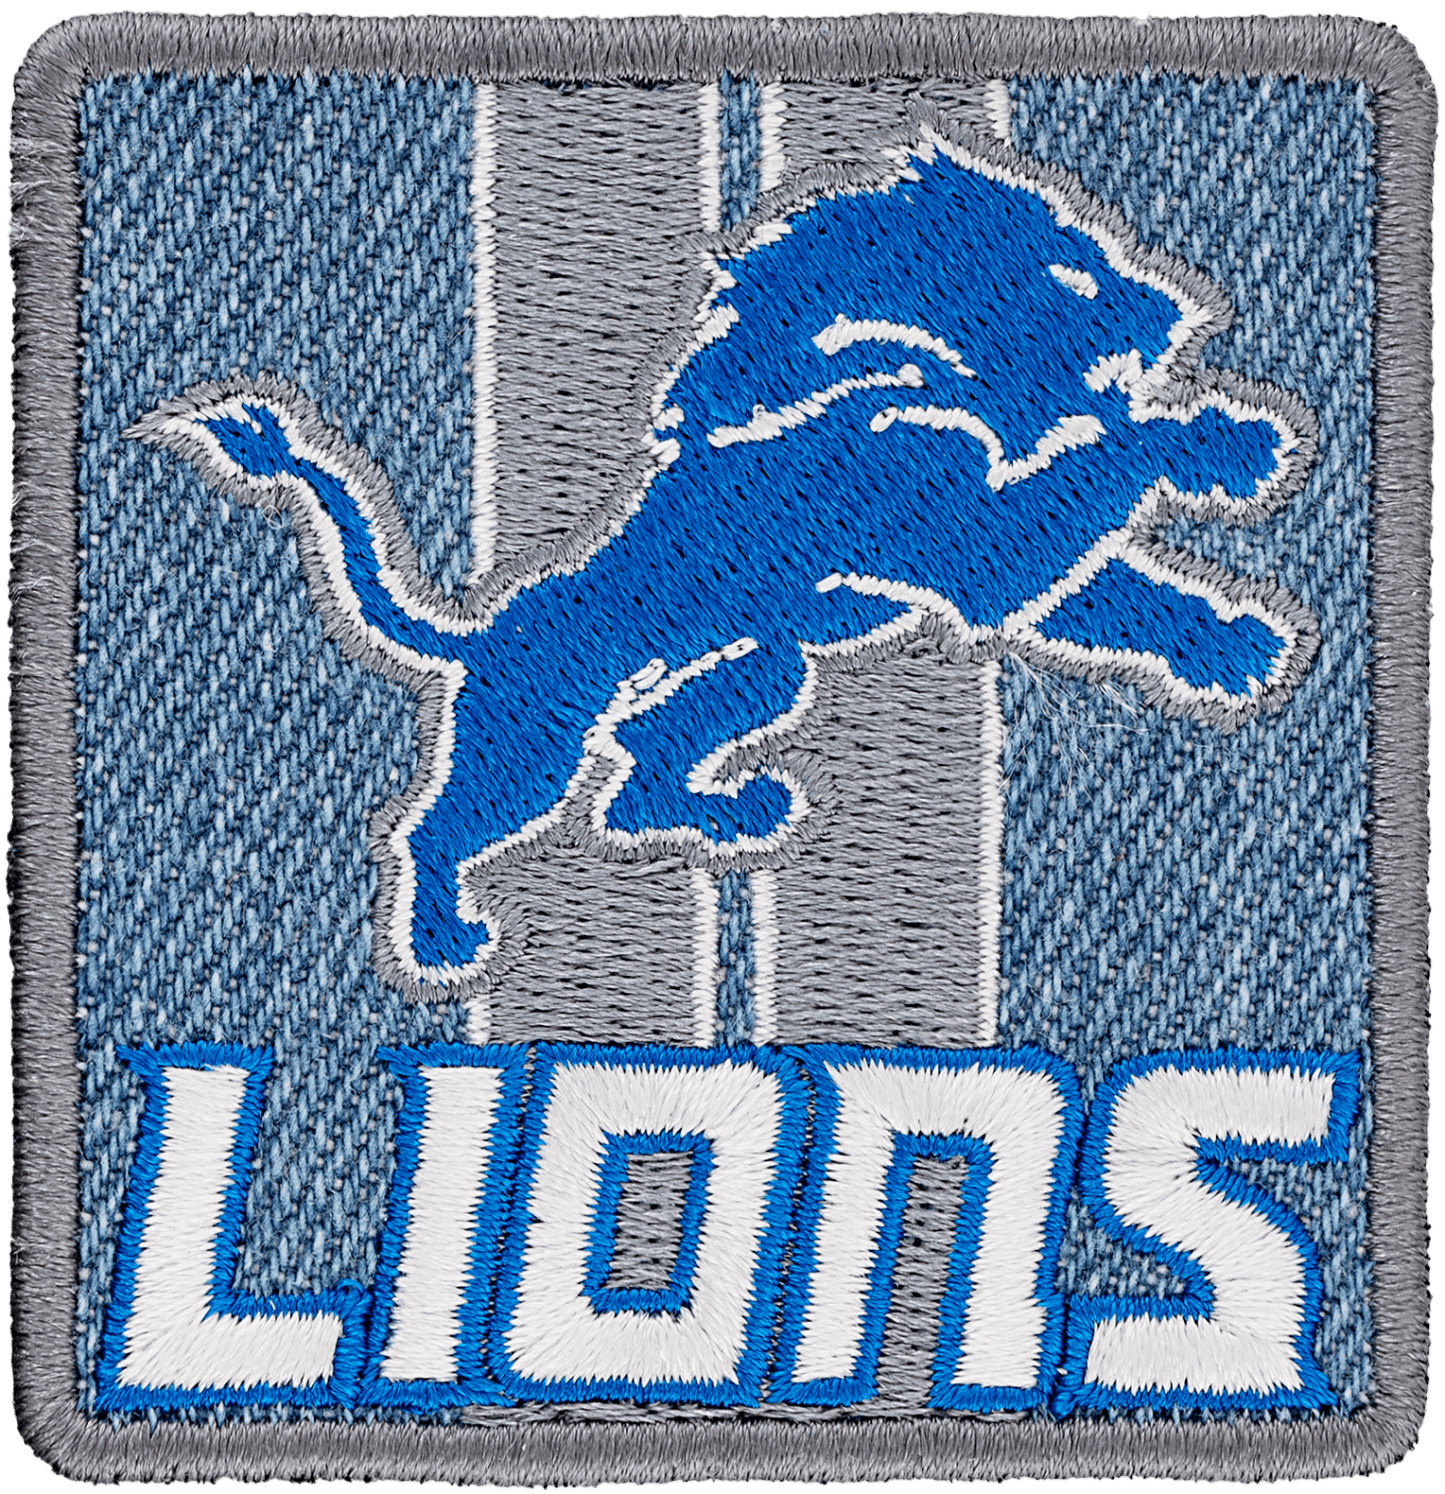 Detroit Lions Patch (Pre-Order)